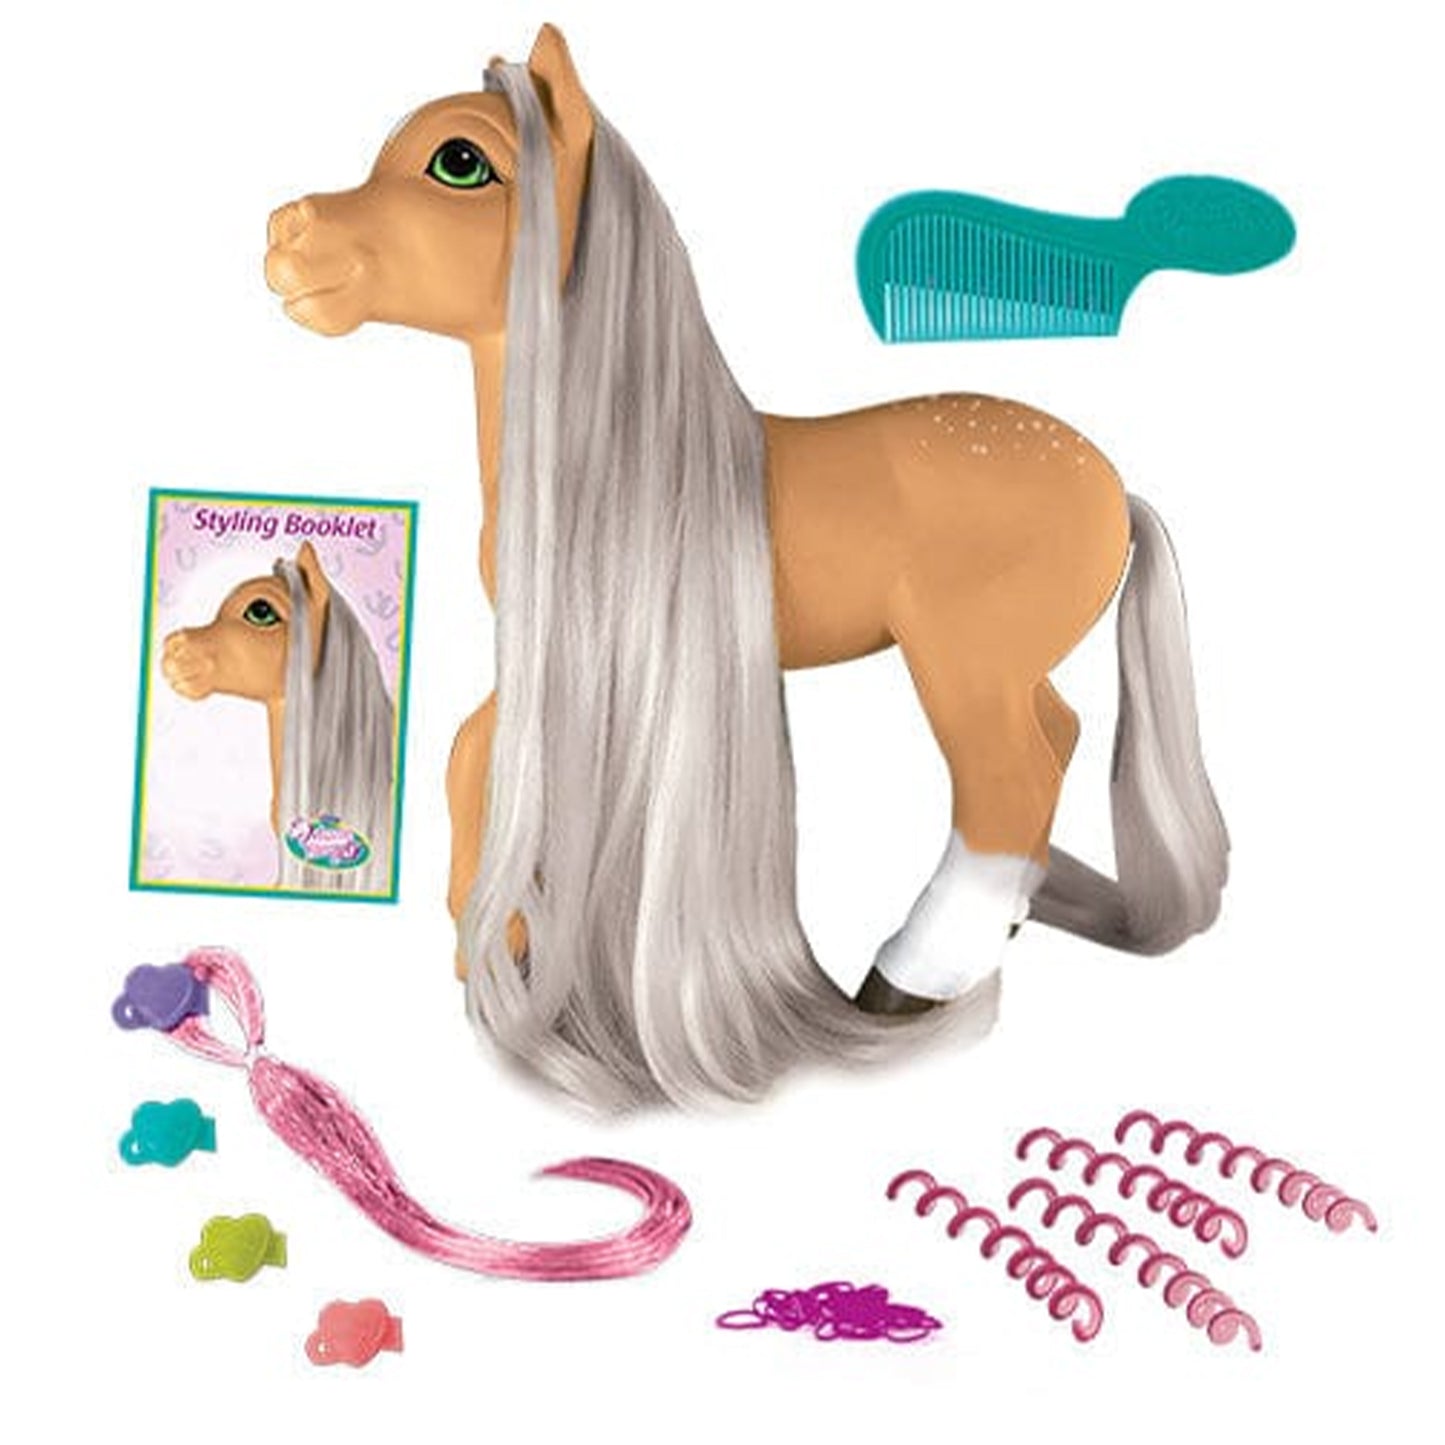 Breyer Mane Beauty Styling Pony